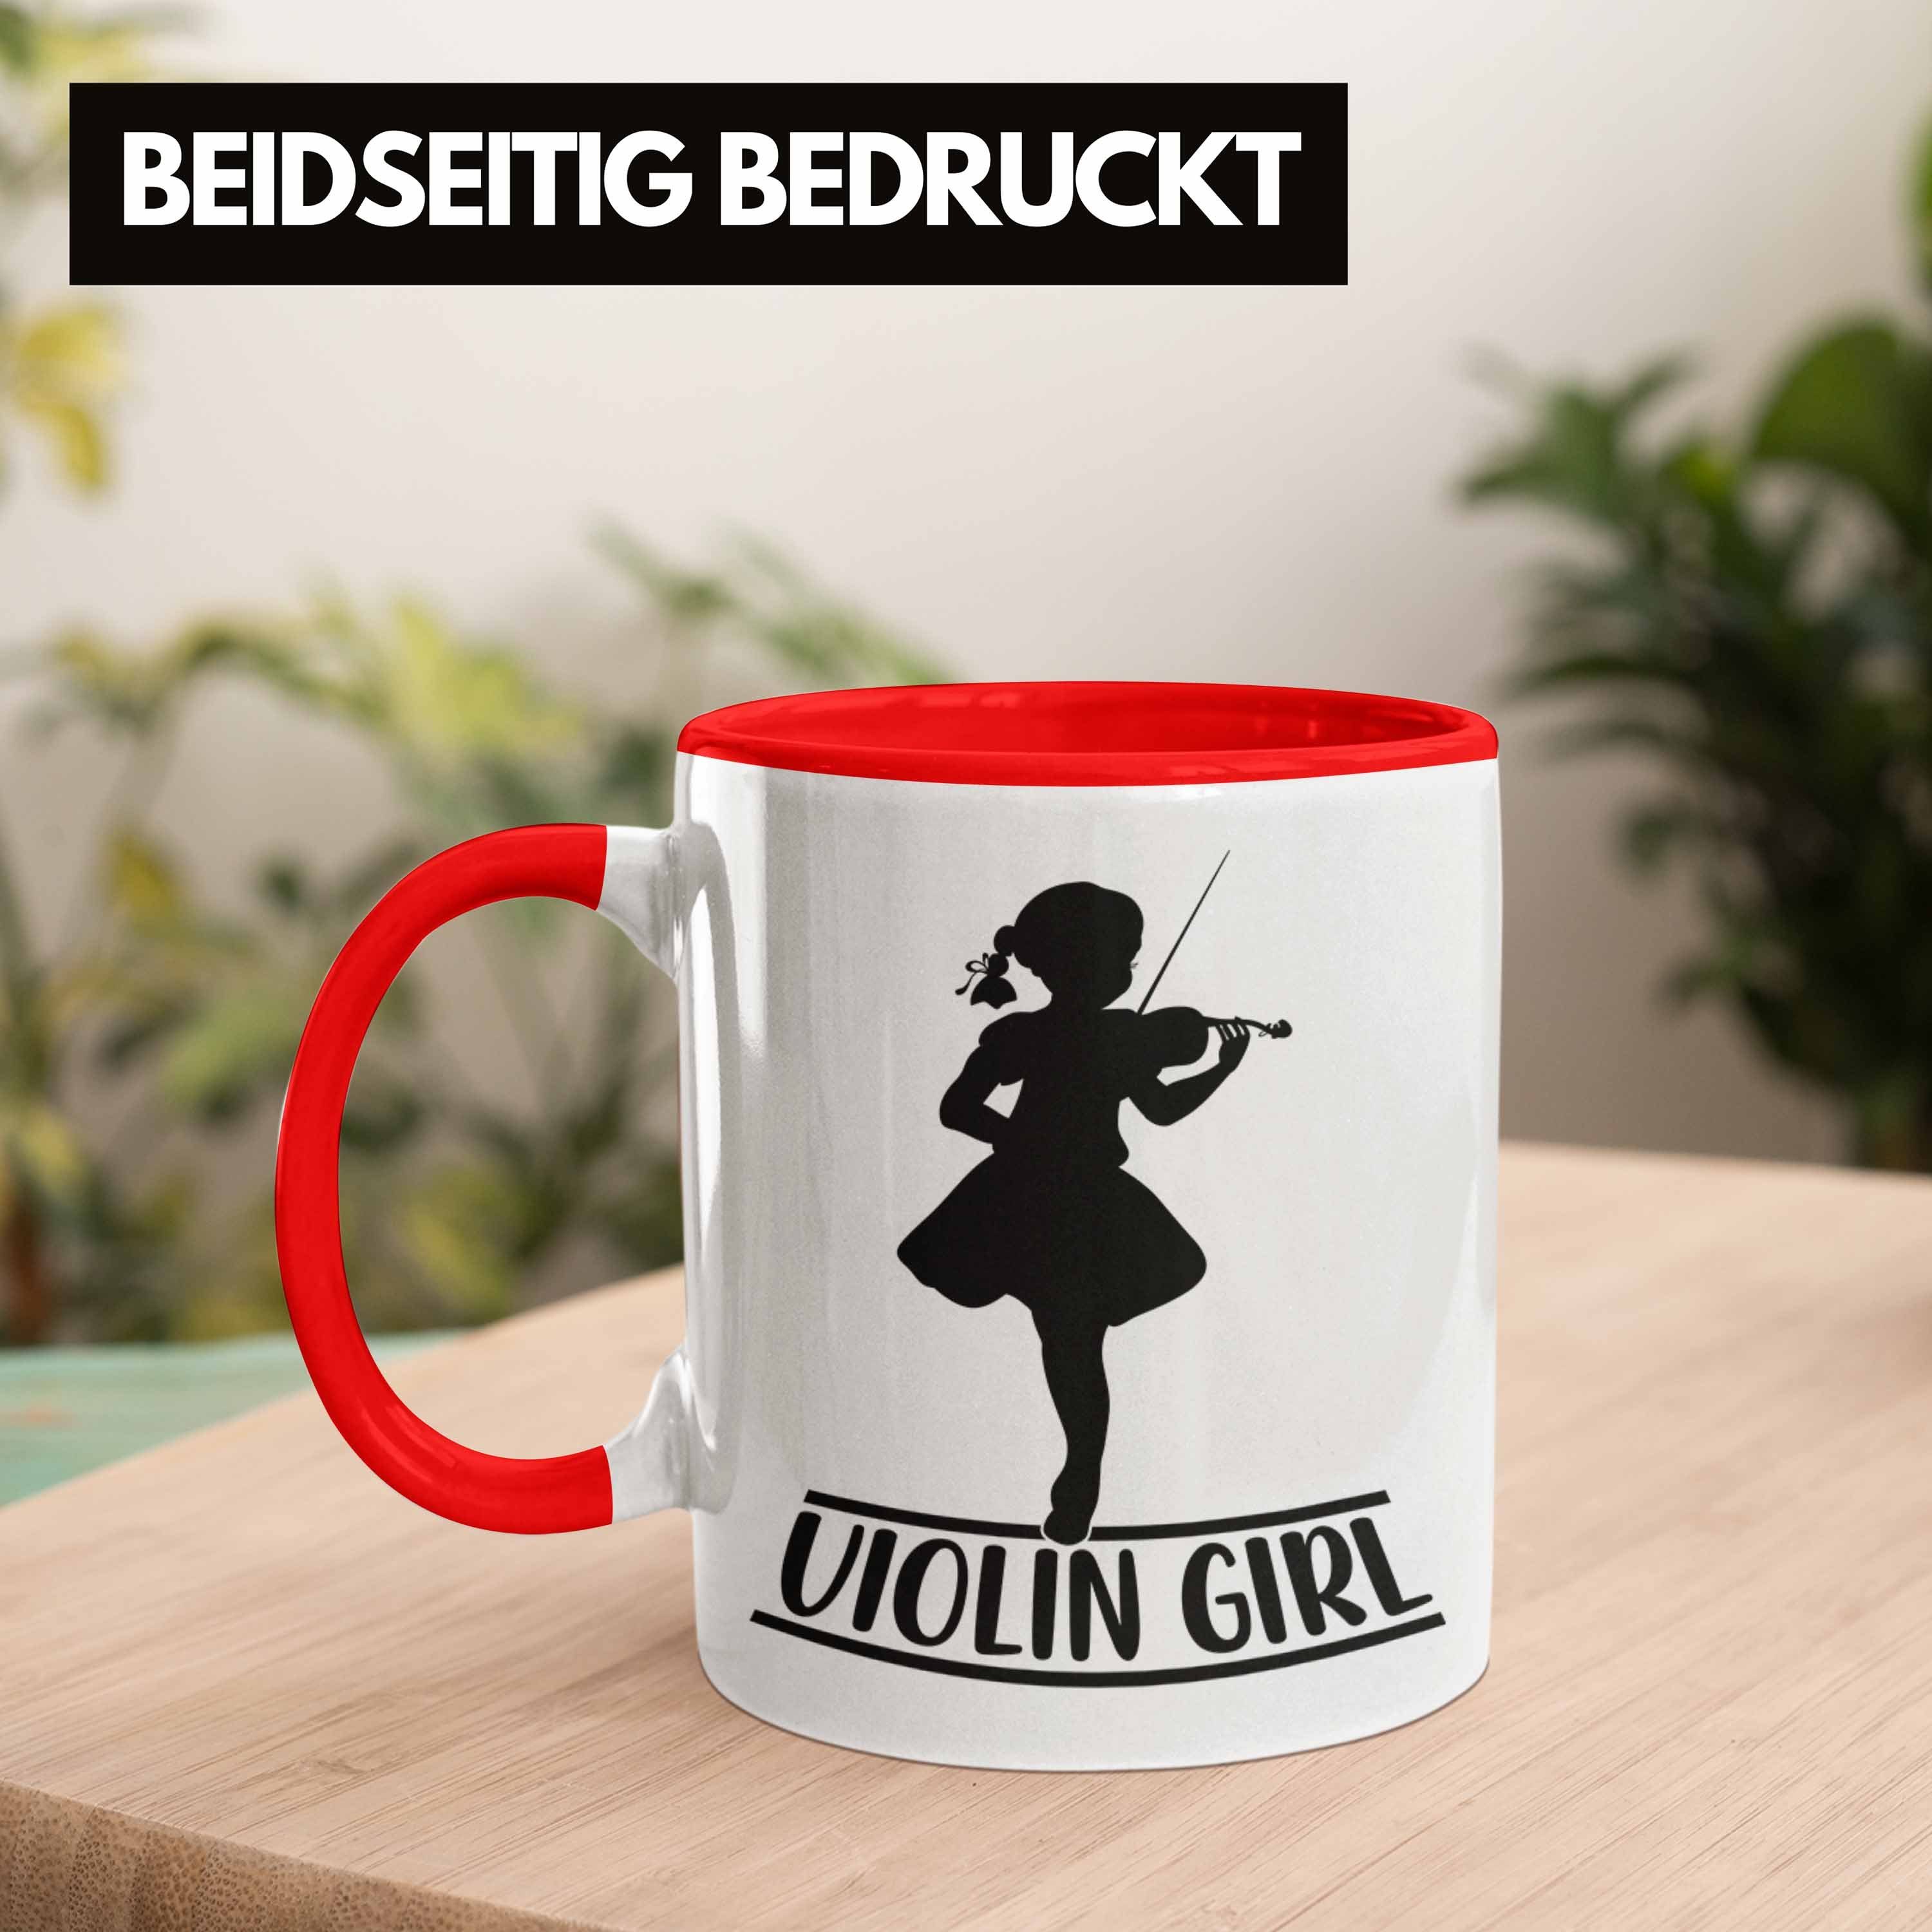 Geigenspielerin Kaffee-Becher Trendation Spru Geigen Tasse Tasse Rot Geigenspieler Geschenk